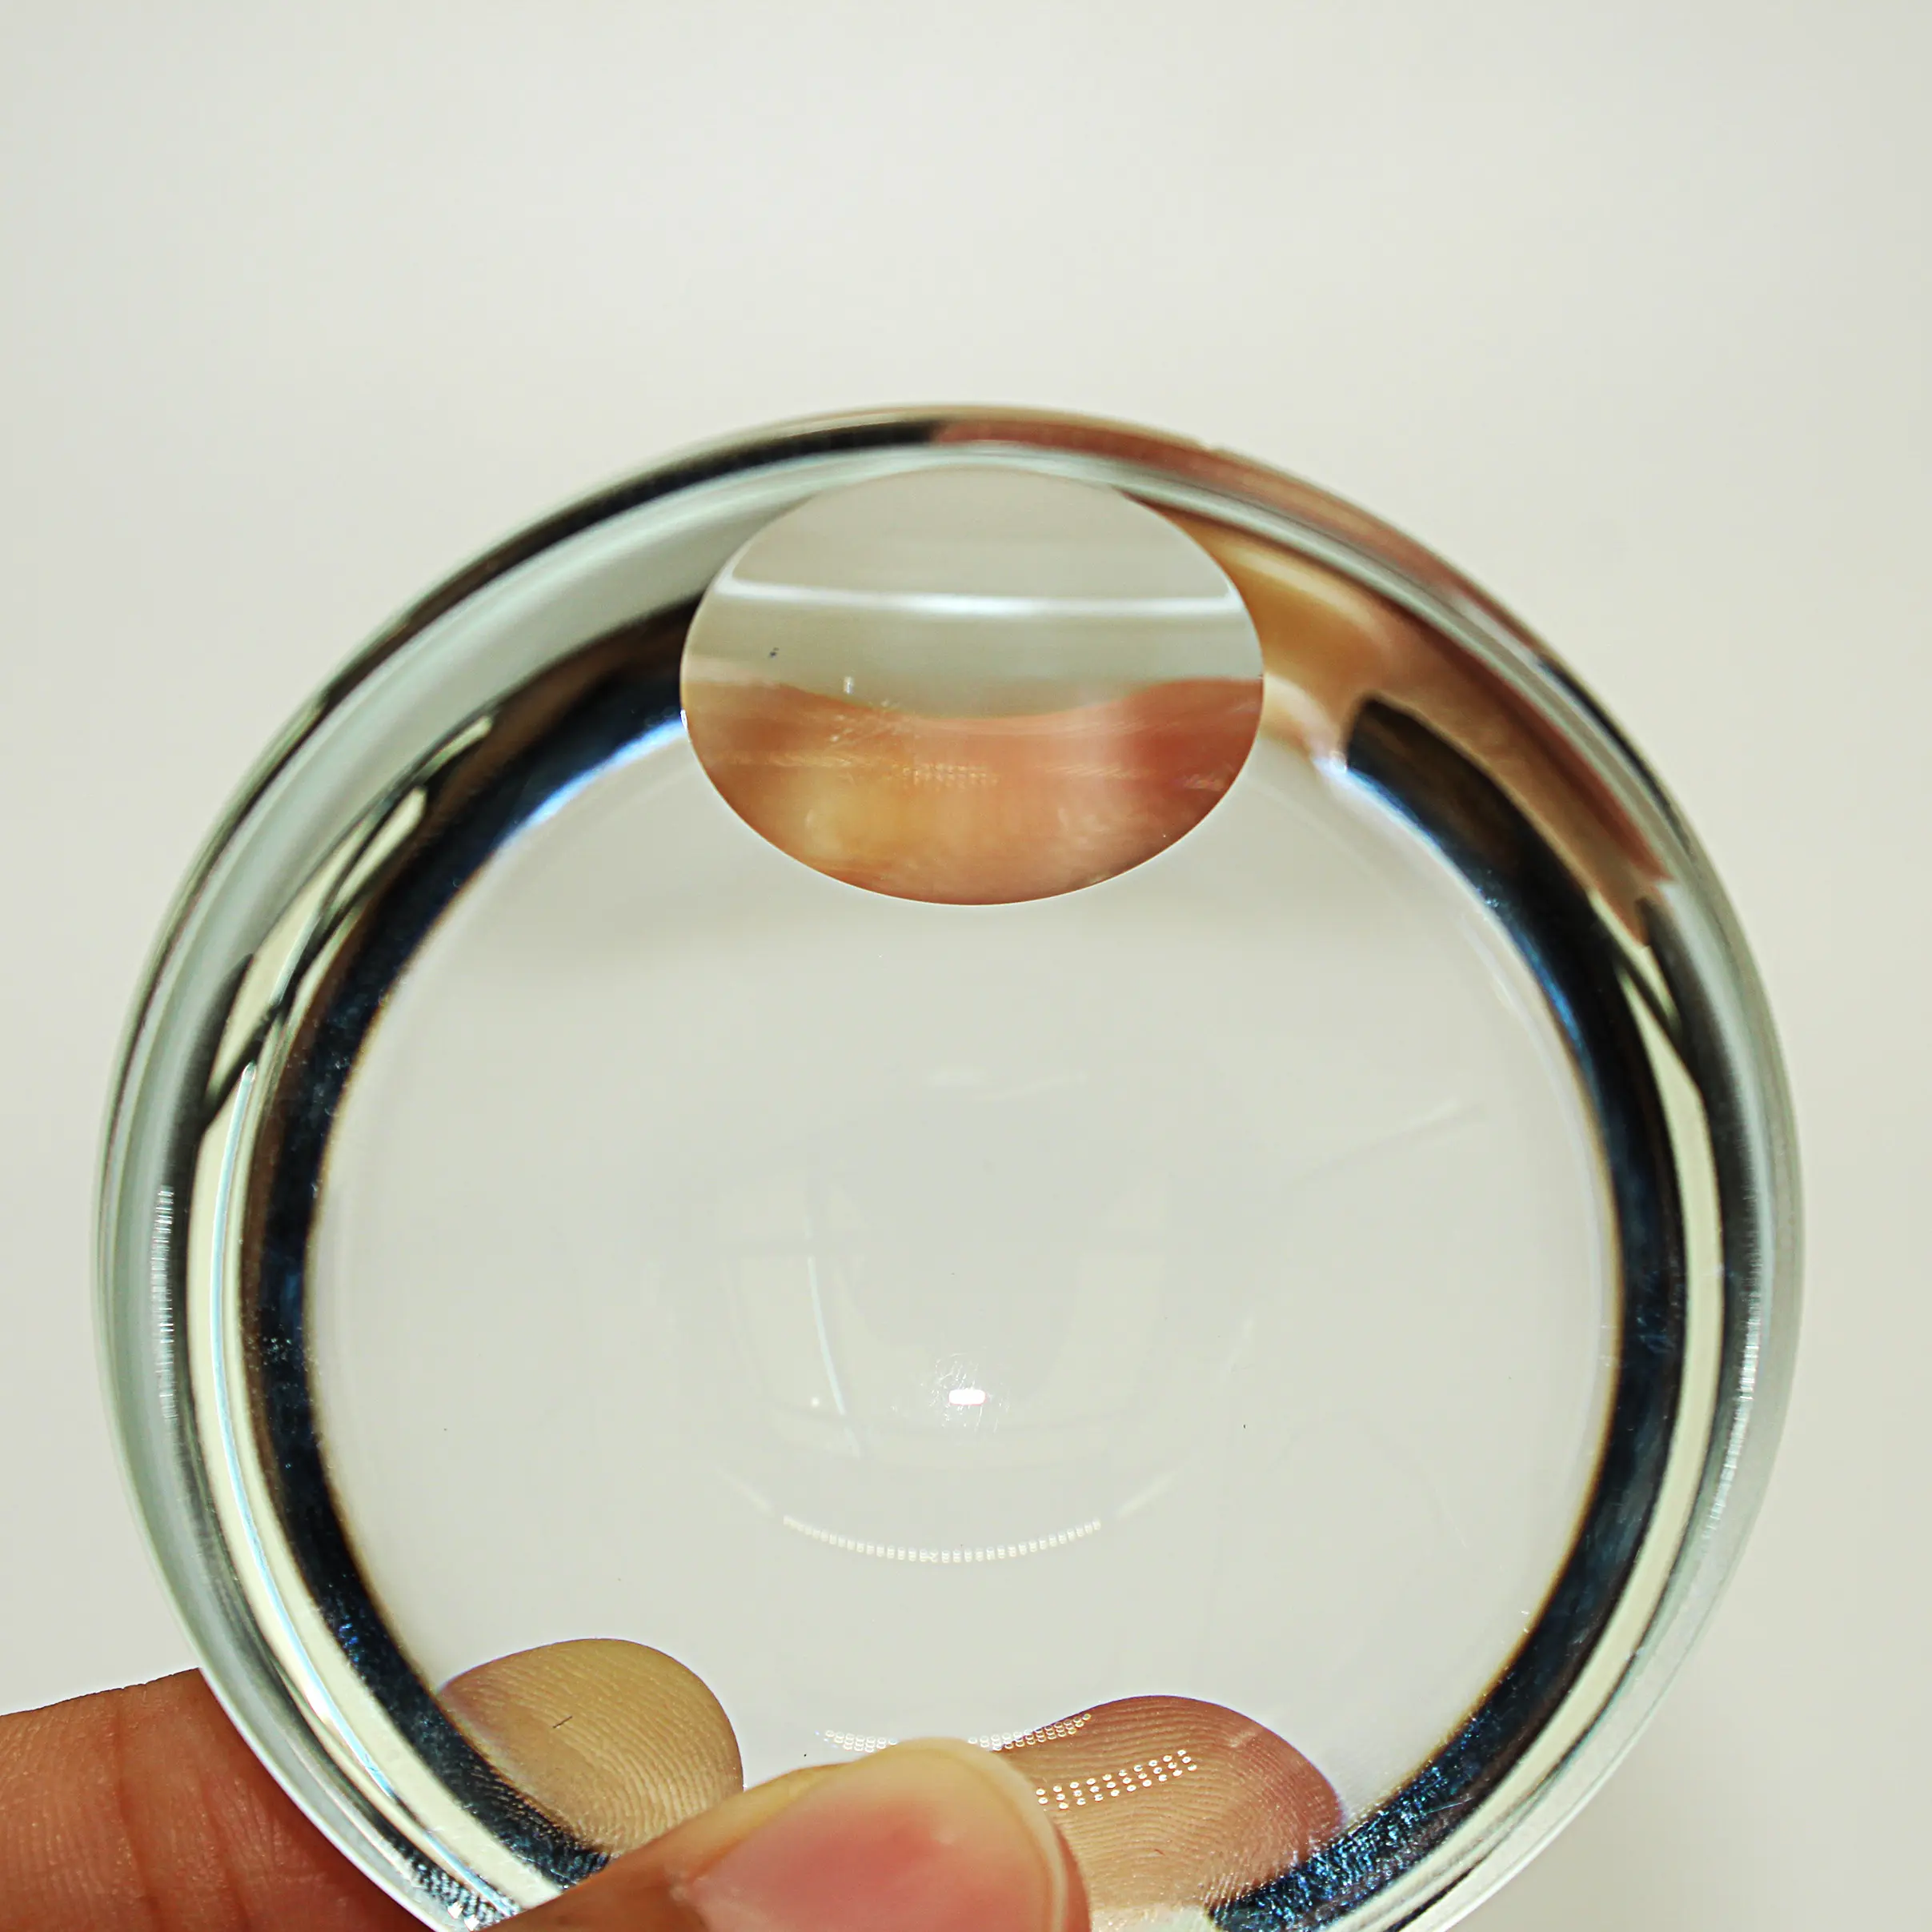 최적의 가격 광학 이미징 포커싱을 위한 맞춤형 광학 장비 평면 볼록 렌즈 투명 사용